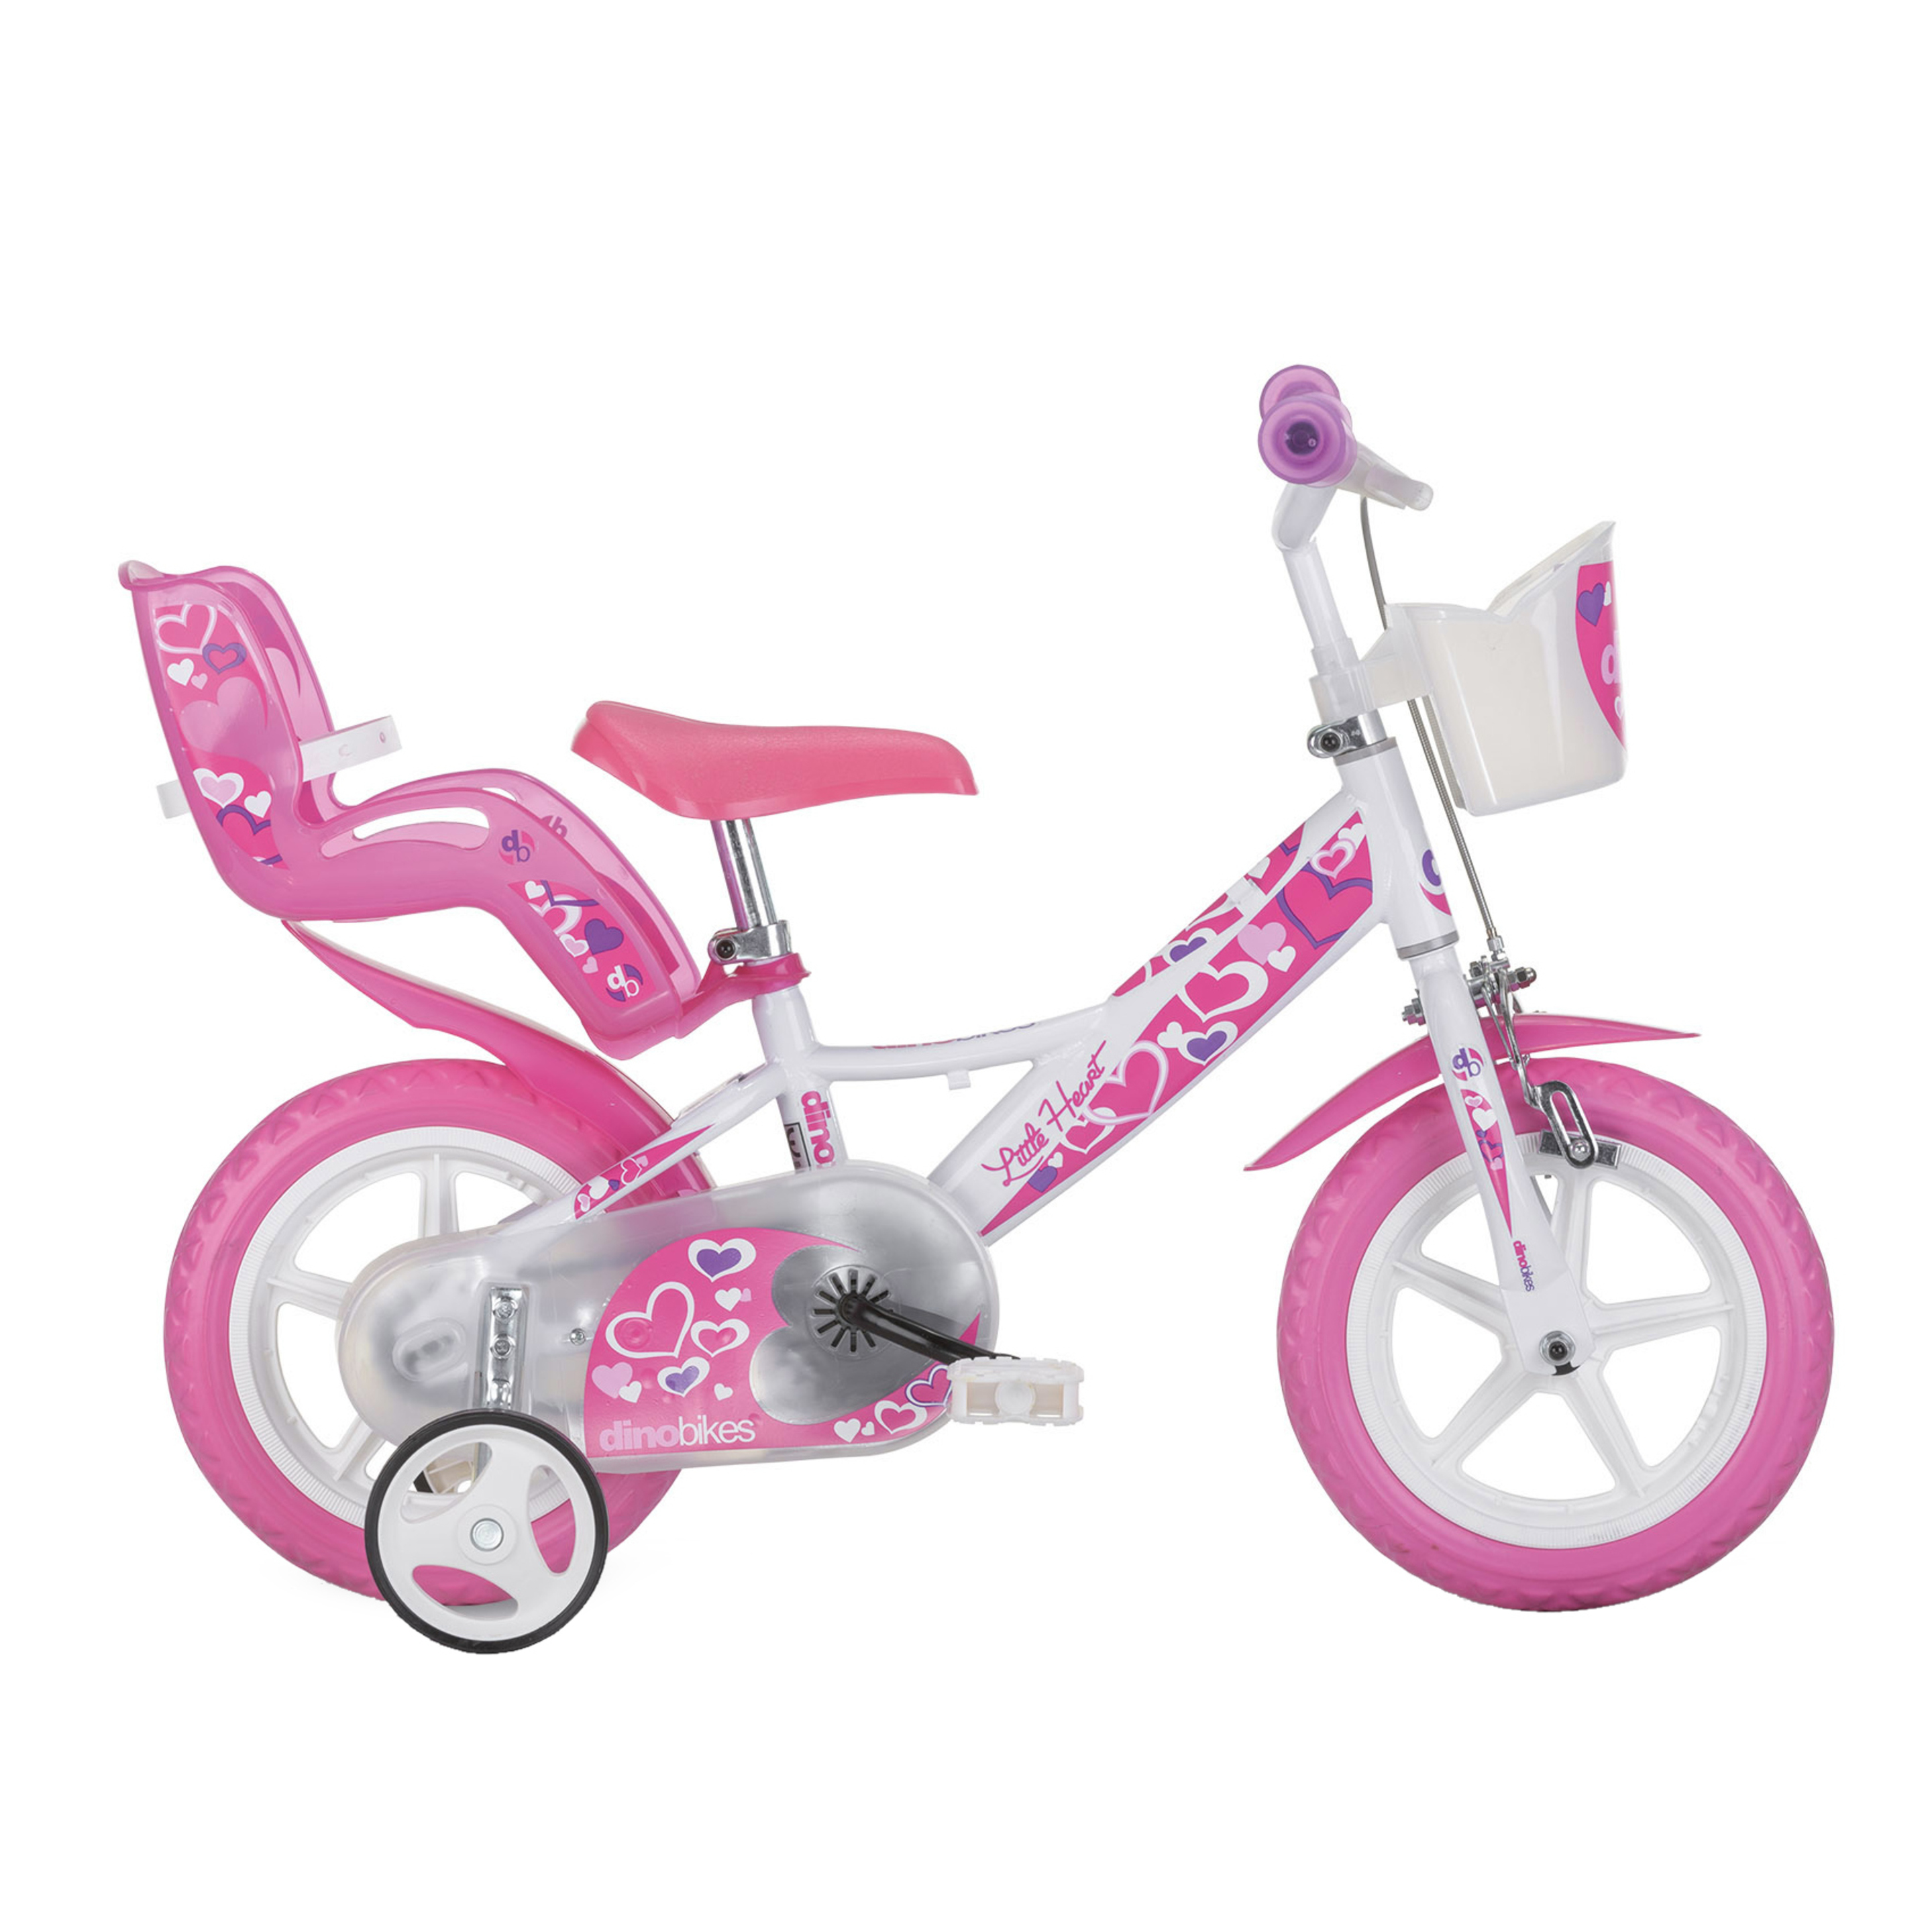 Bicicleta Infantil Hearts 12 Pulgadas 3-5 Años - Blanco  MKP